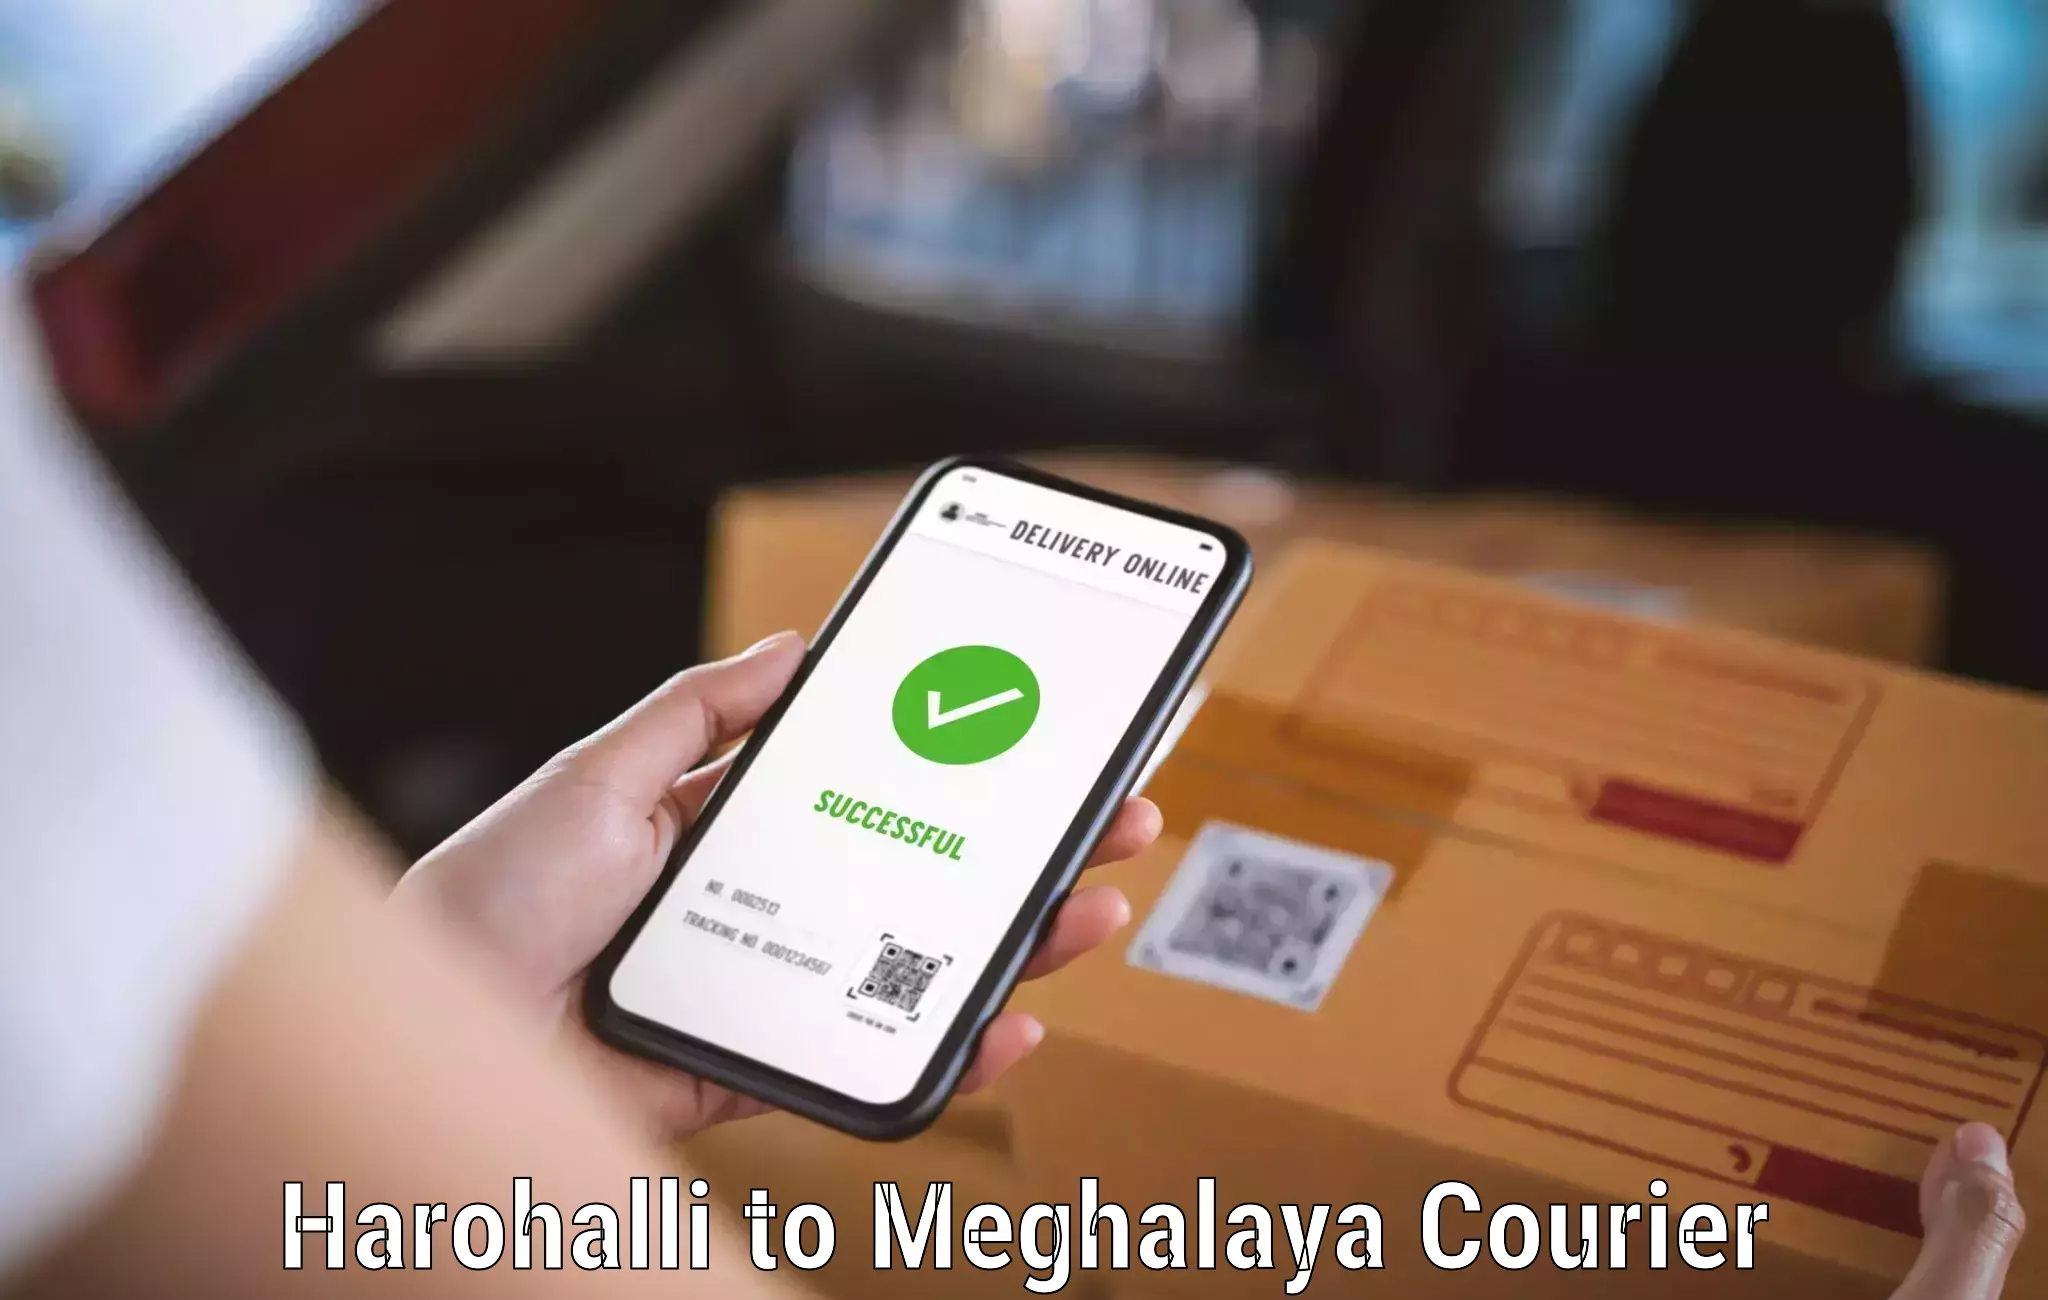 User-friendly courier app Harohalli to Meghalaya